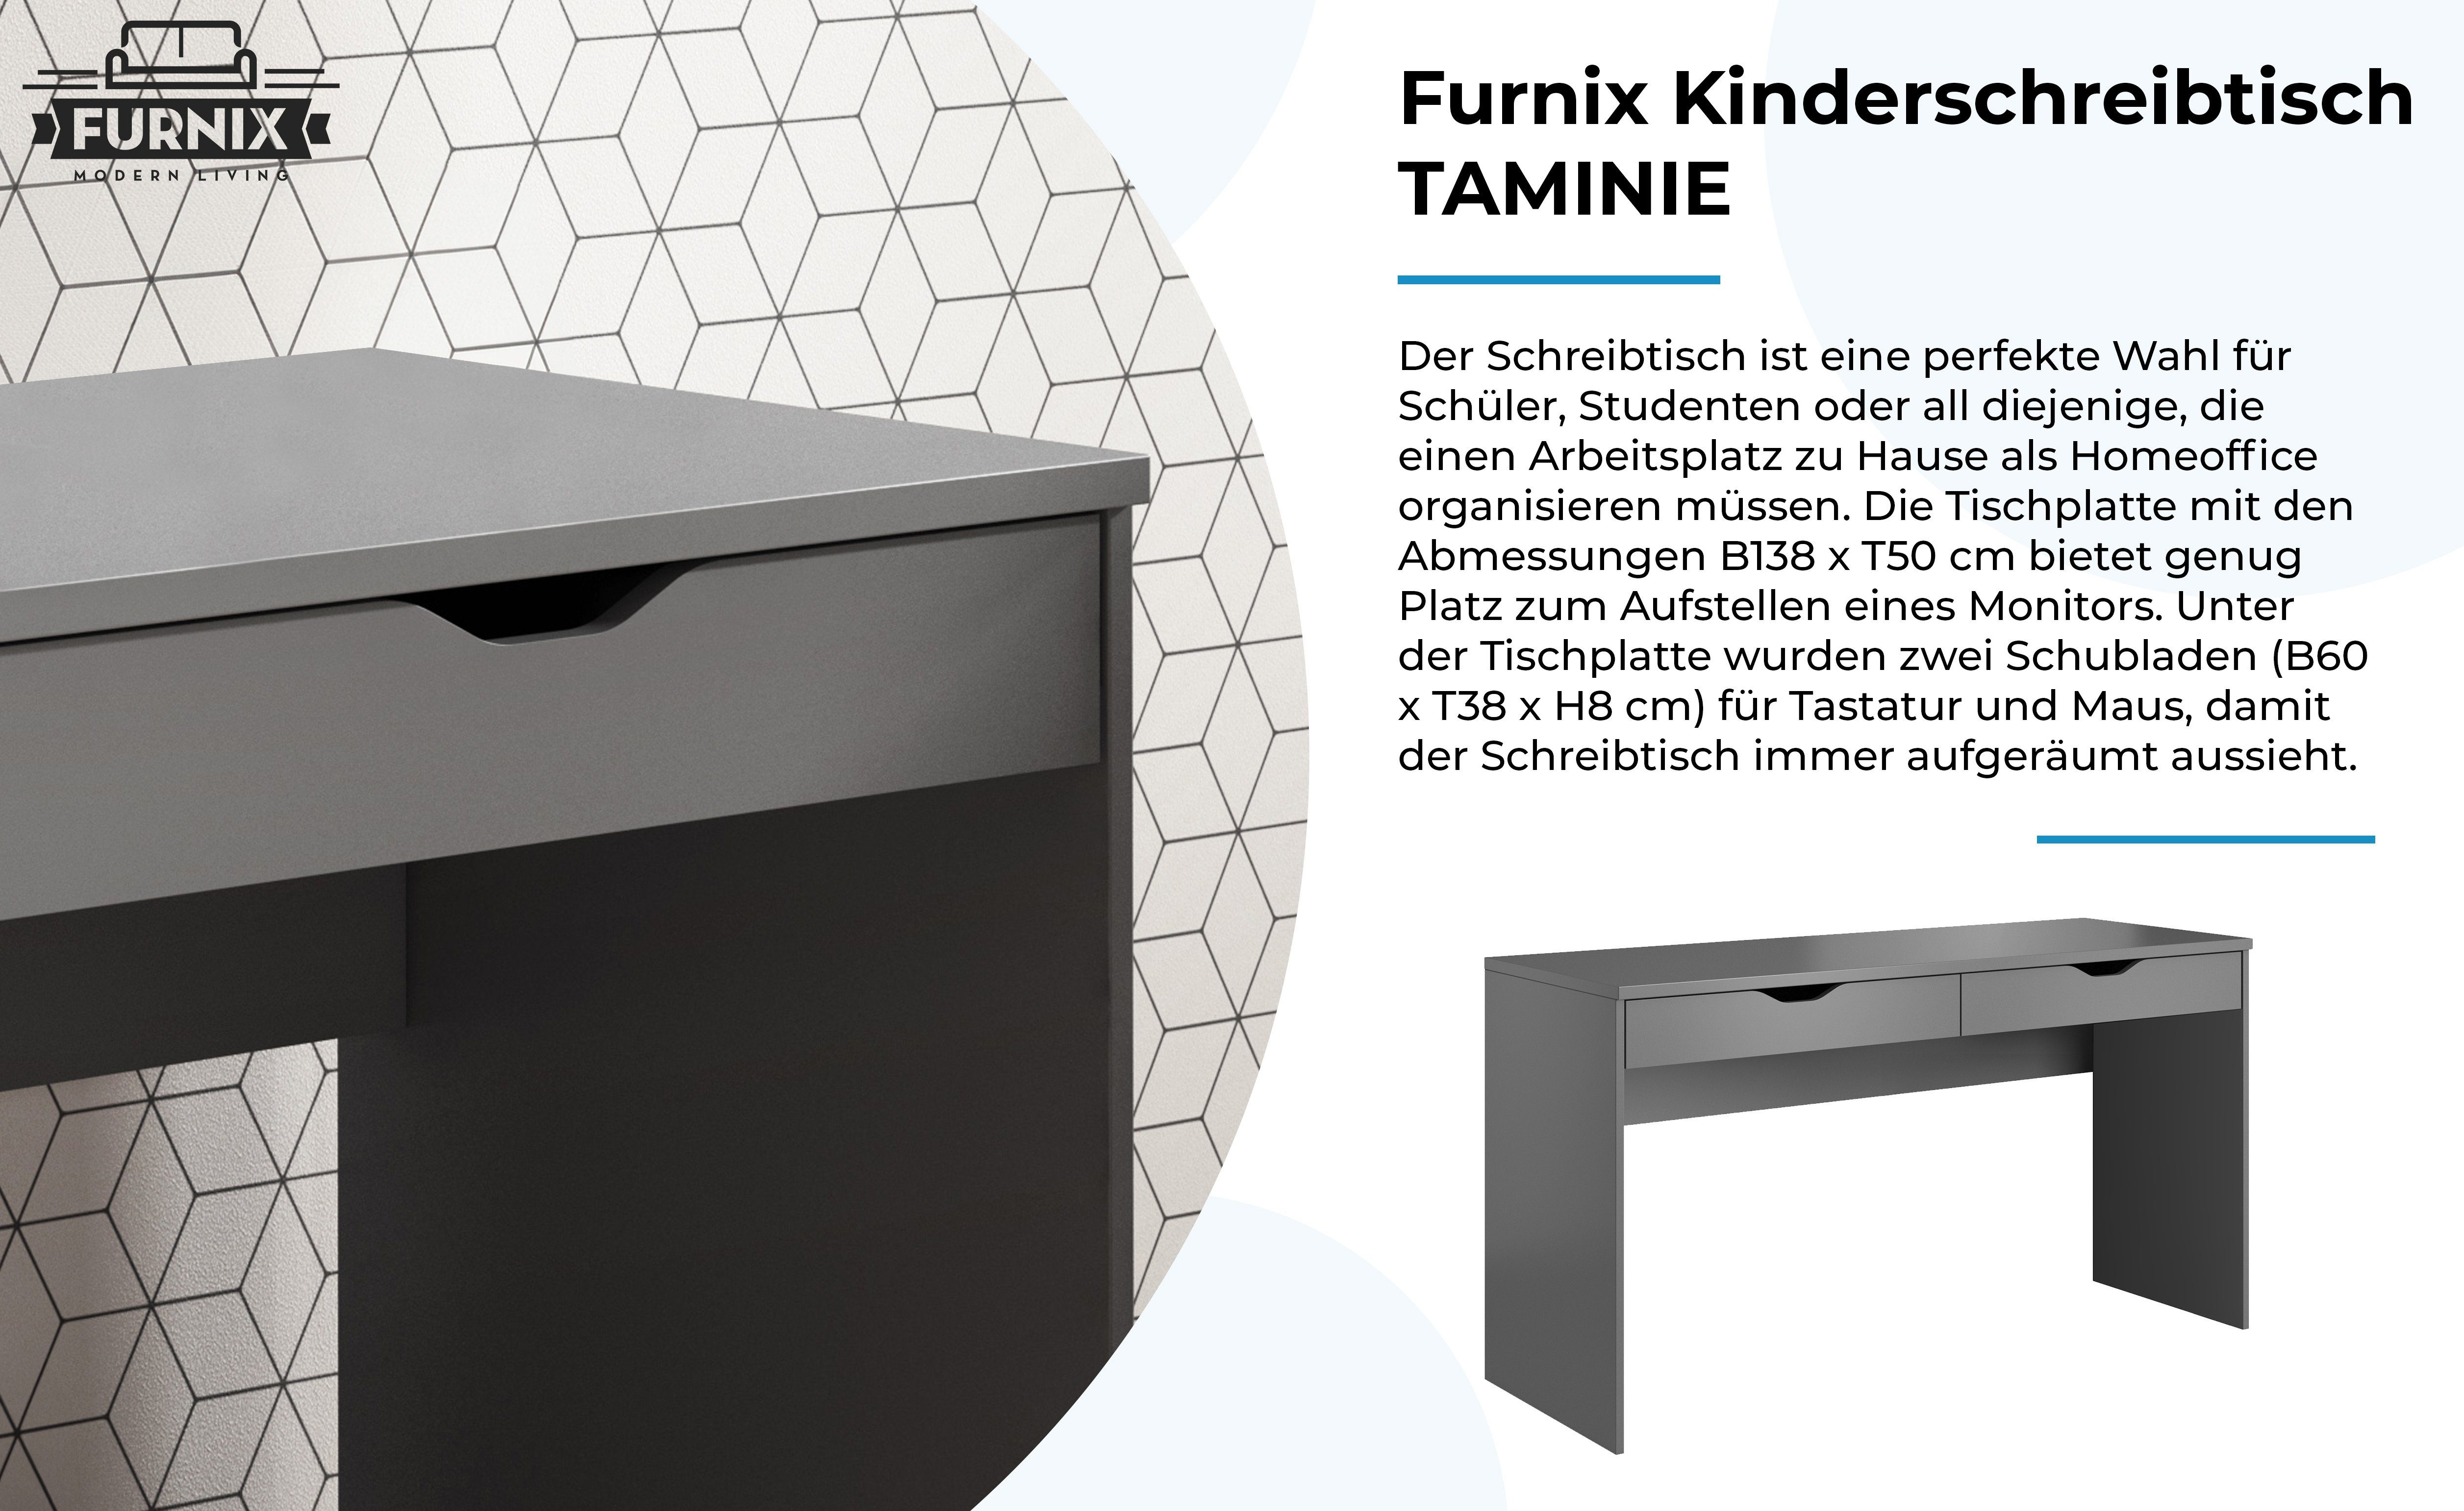 H76 x made für x Schreibtisch in Kinder modernes TAMINIE Schubladen und T50 mit B138 cm, EU Furnix 2 Jugendliche, Grau Design,